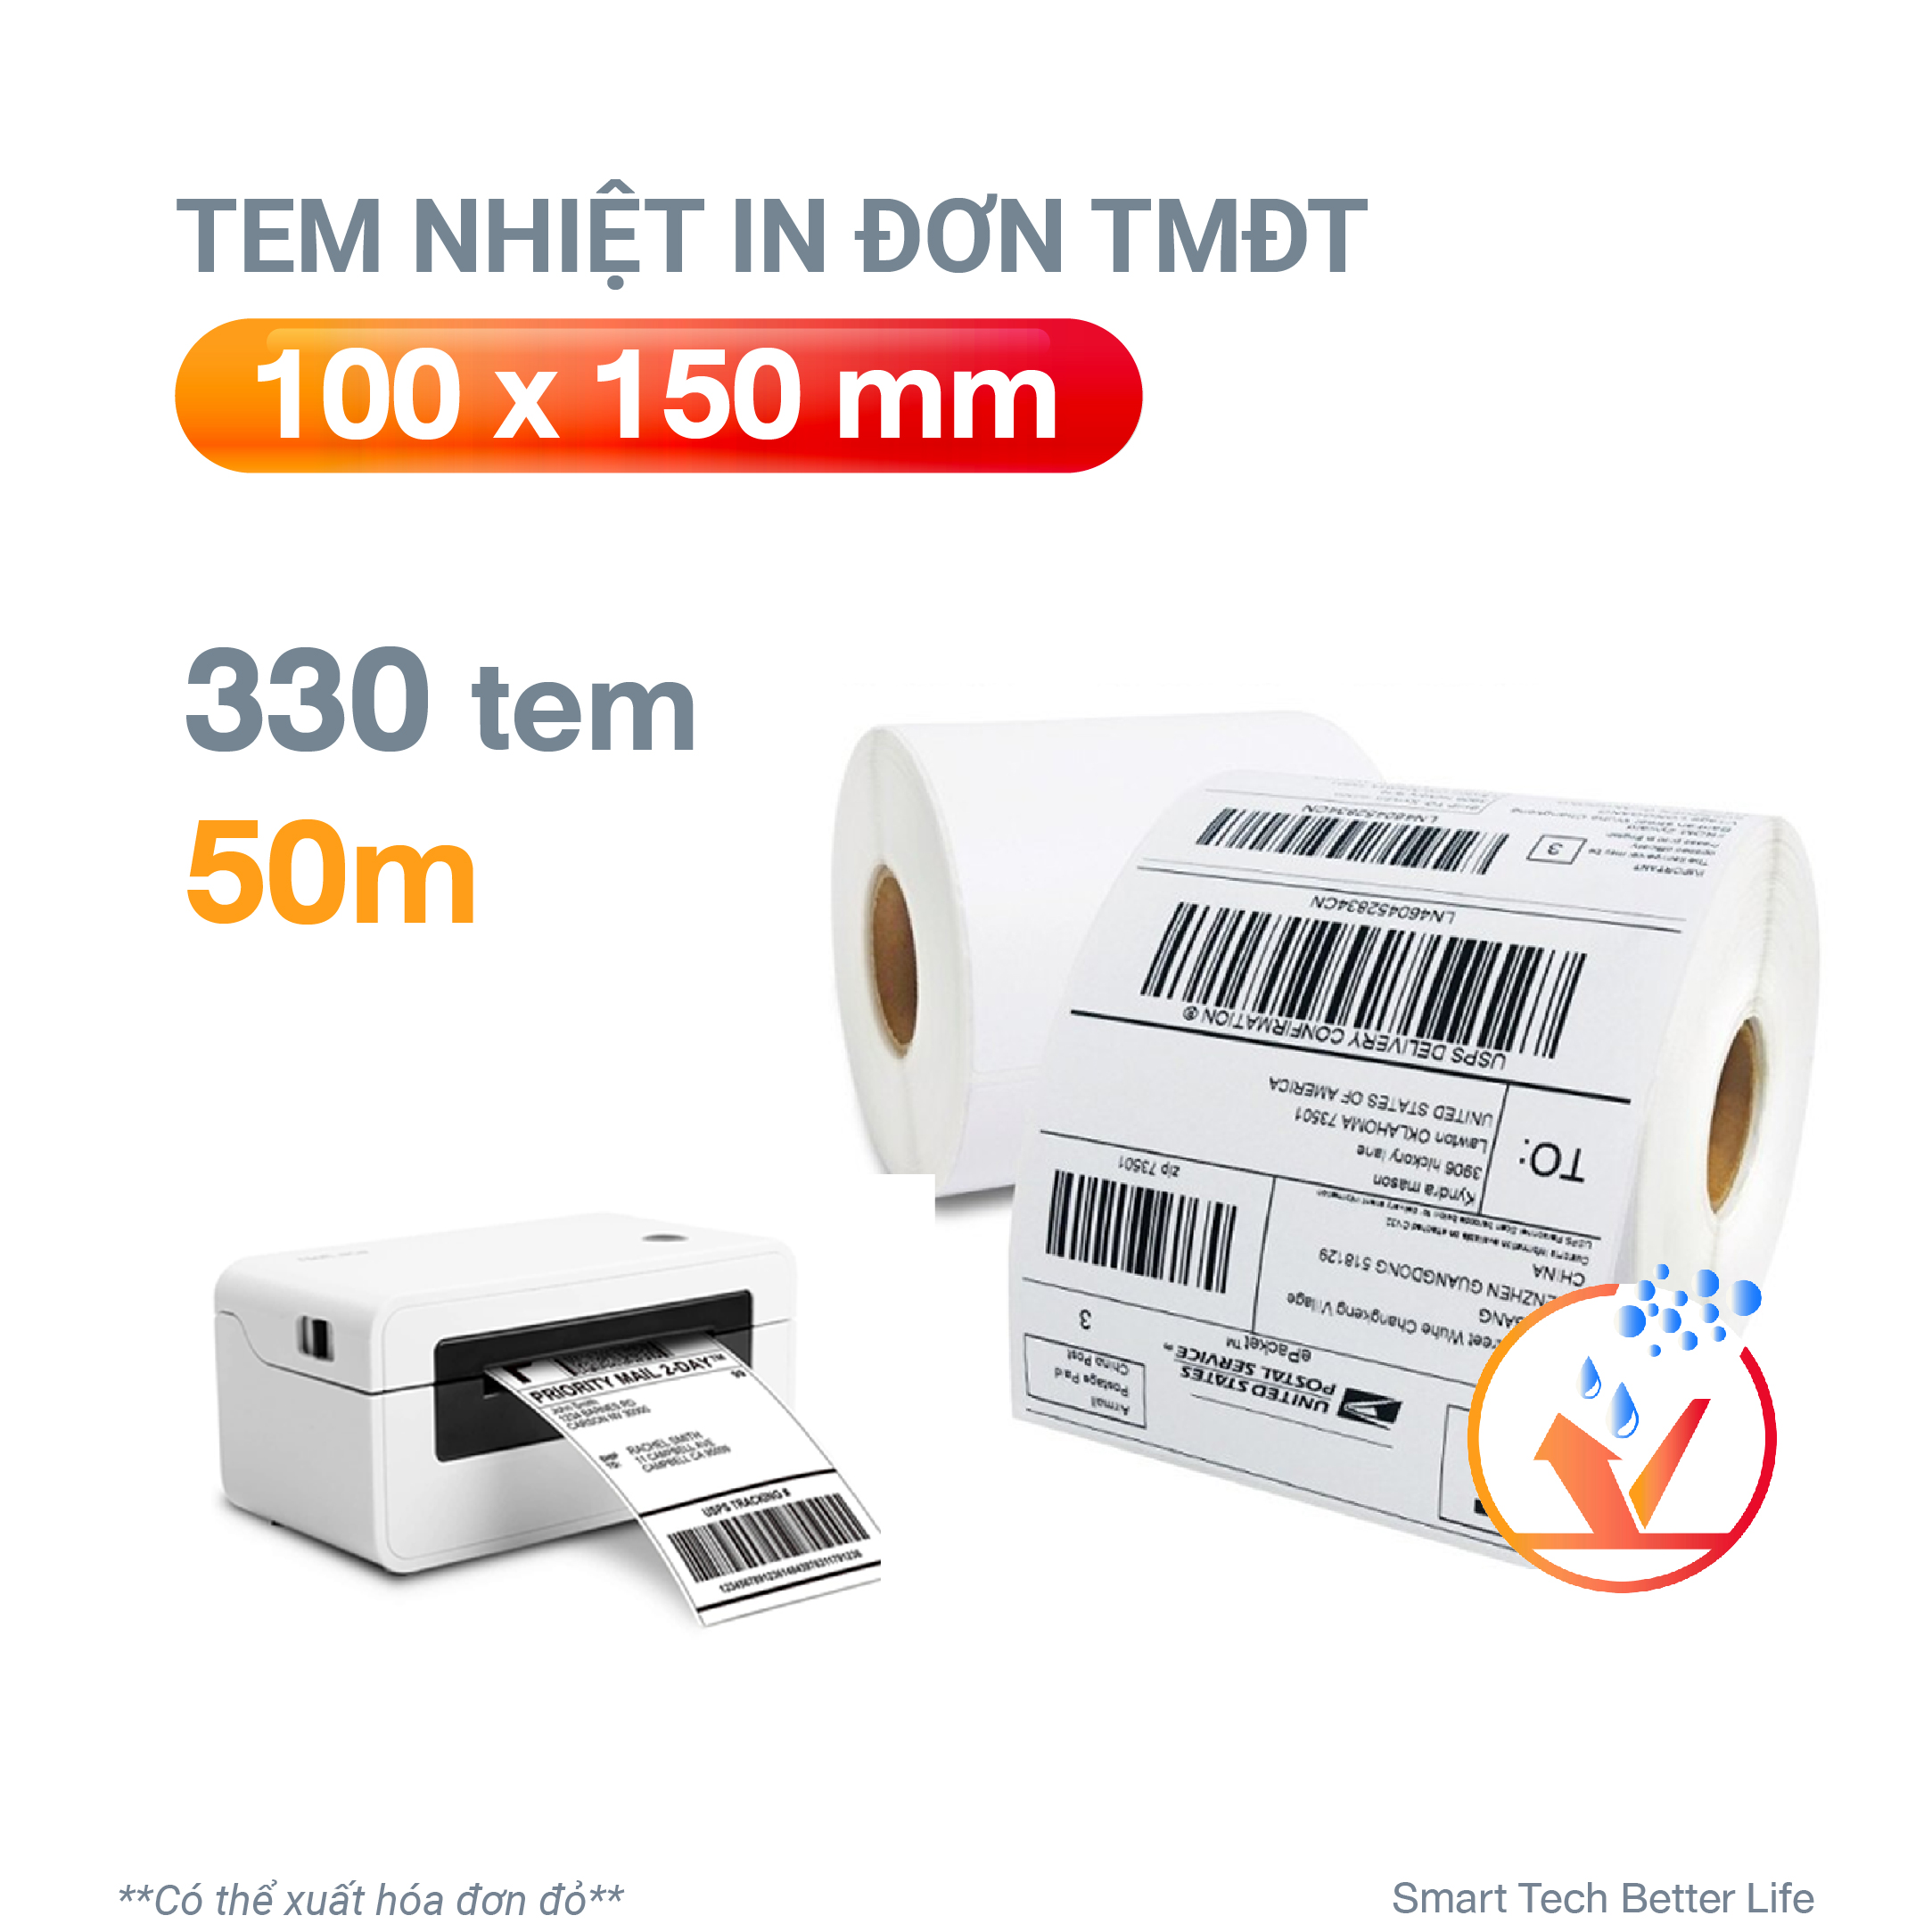 Cuộn giấy in nhiệt giấy in bill VAYO 100x150mm (giấy A6), tự dính,chống nước, dành cho thương mại điện tử